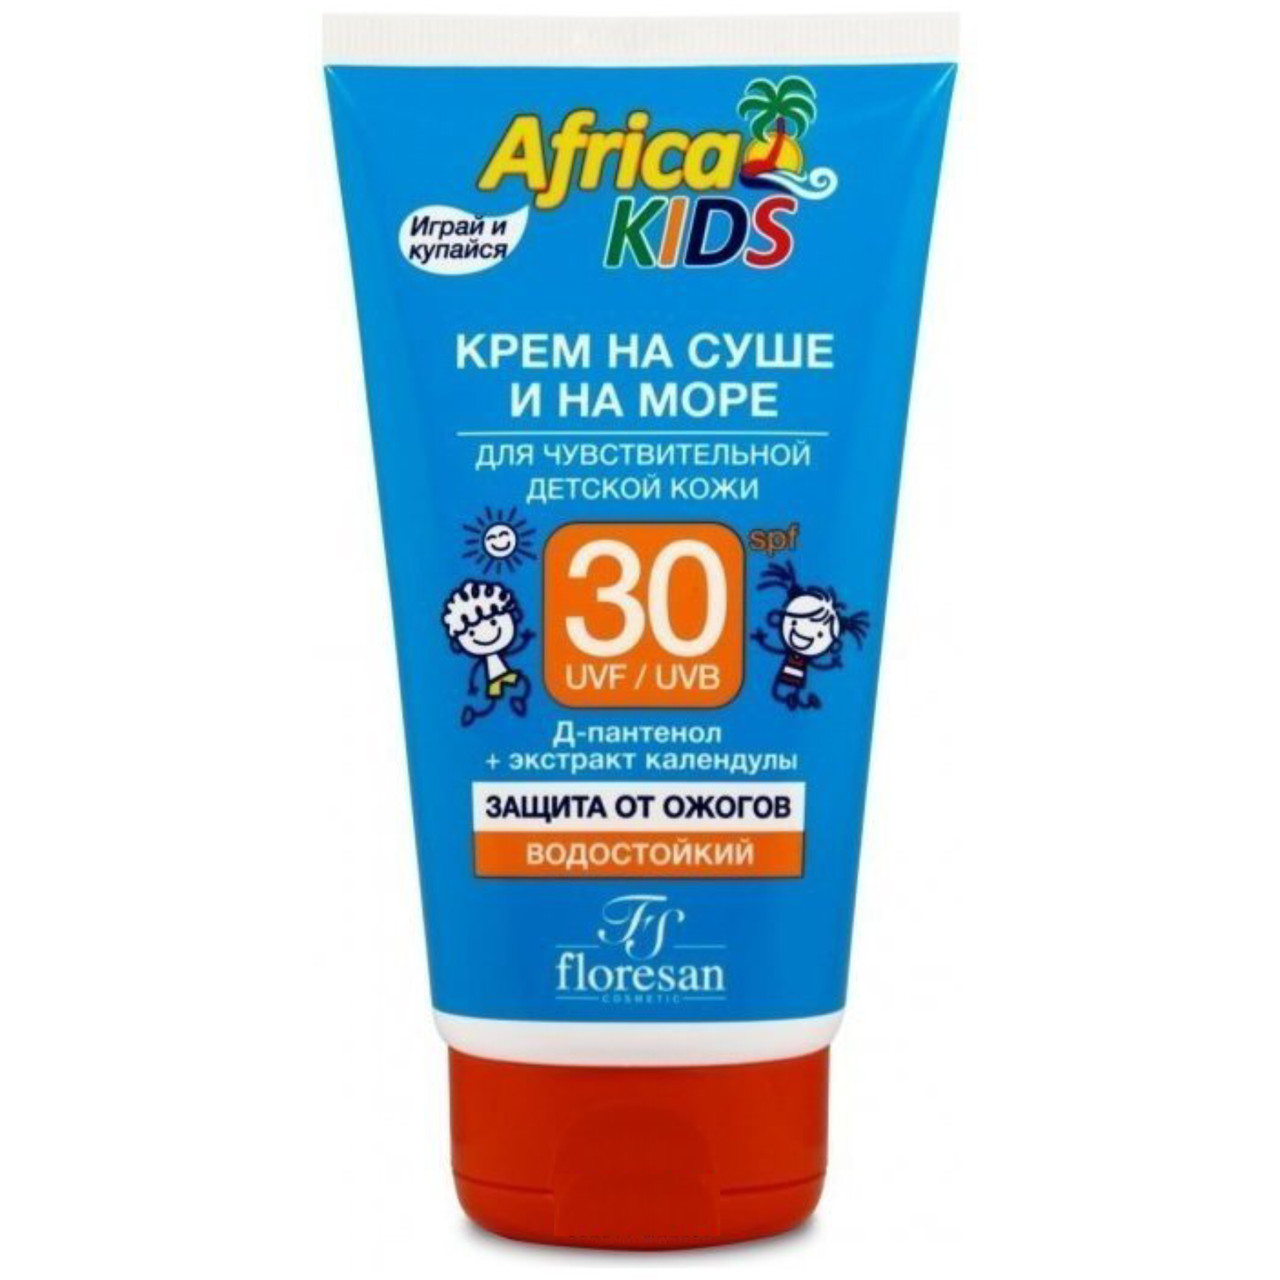 Крем солнцезащитный для чувствительной детской кожи Floresan Africa Kids SPF 30, 150мл